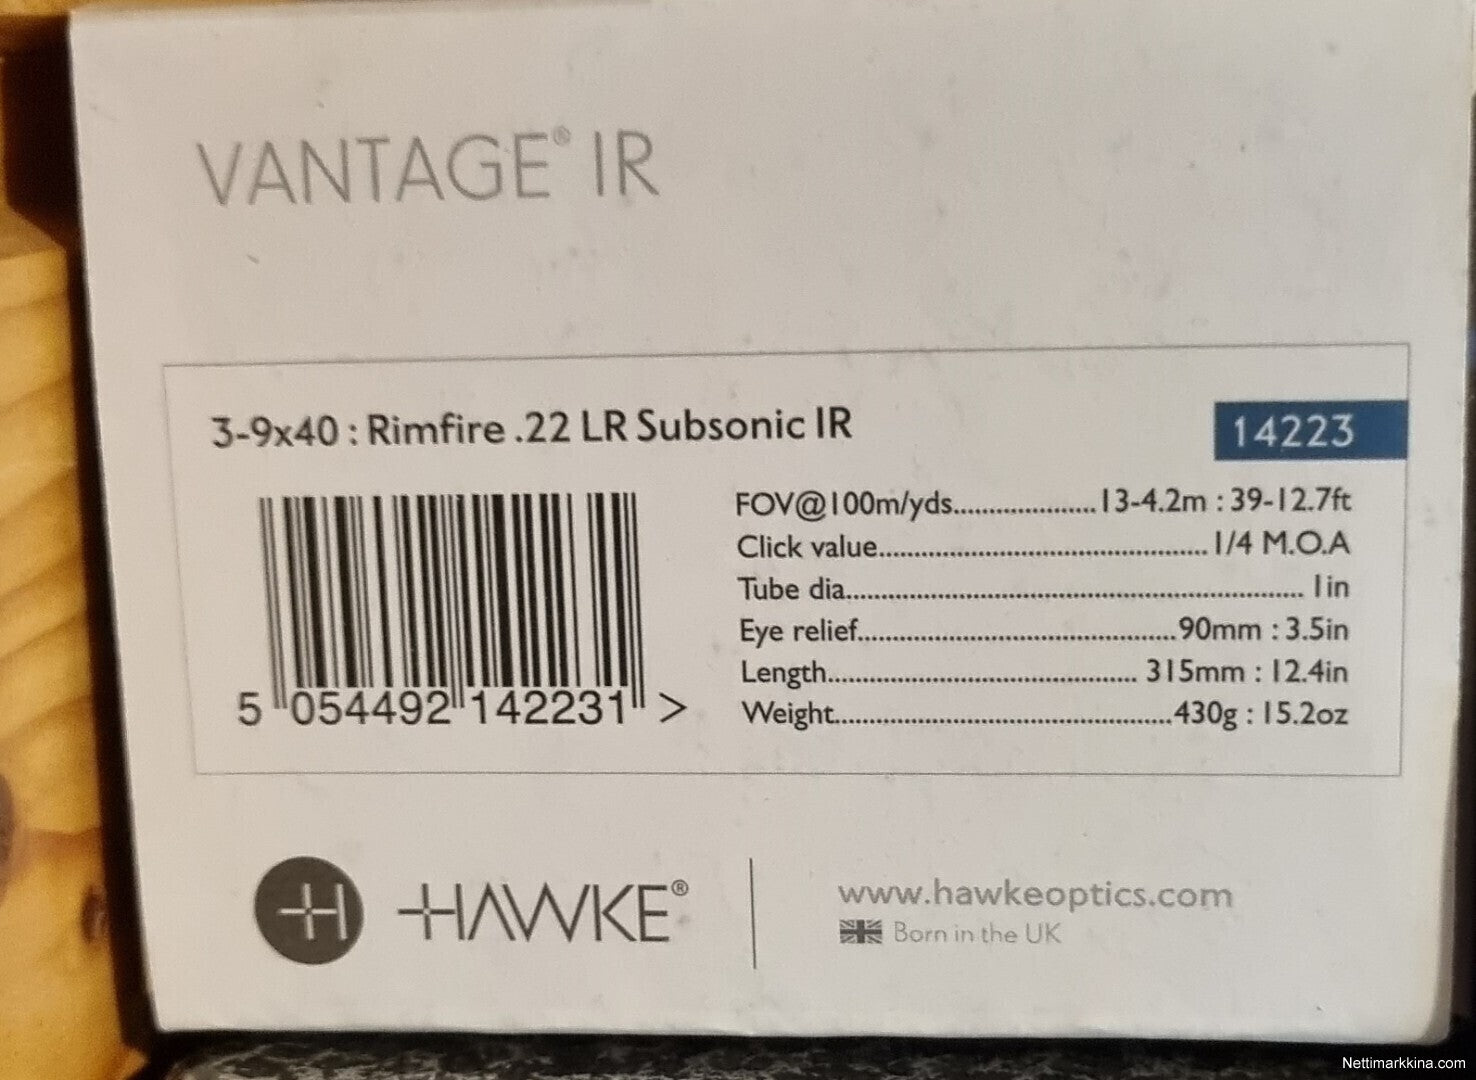 HAWKE VANTAGE 3-9X40 RIMFIRE .22 LR(SUB) IR- 14223